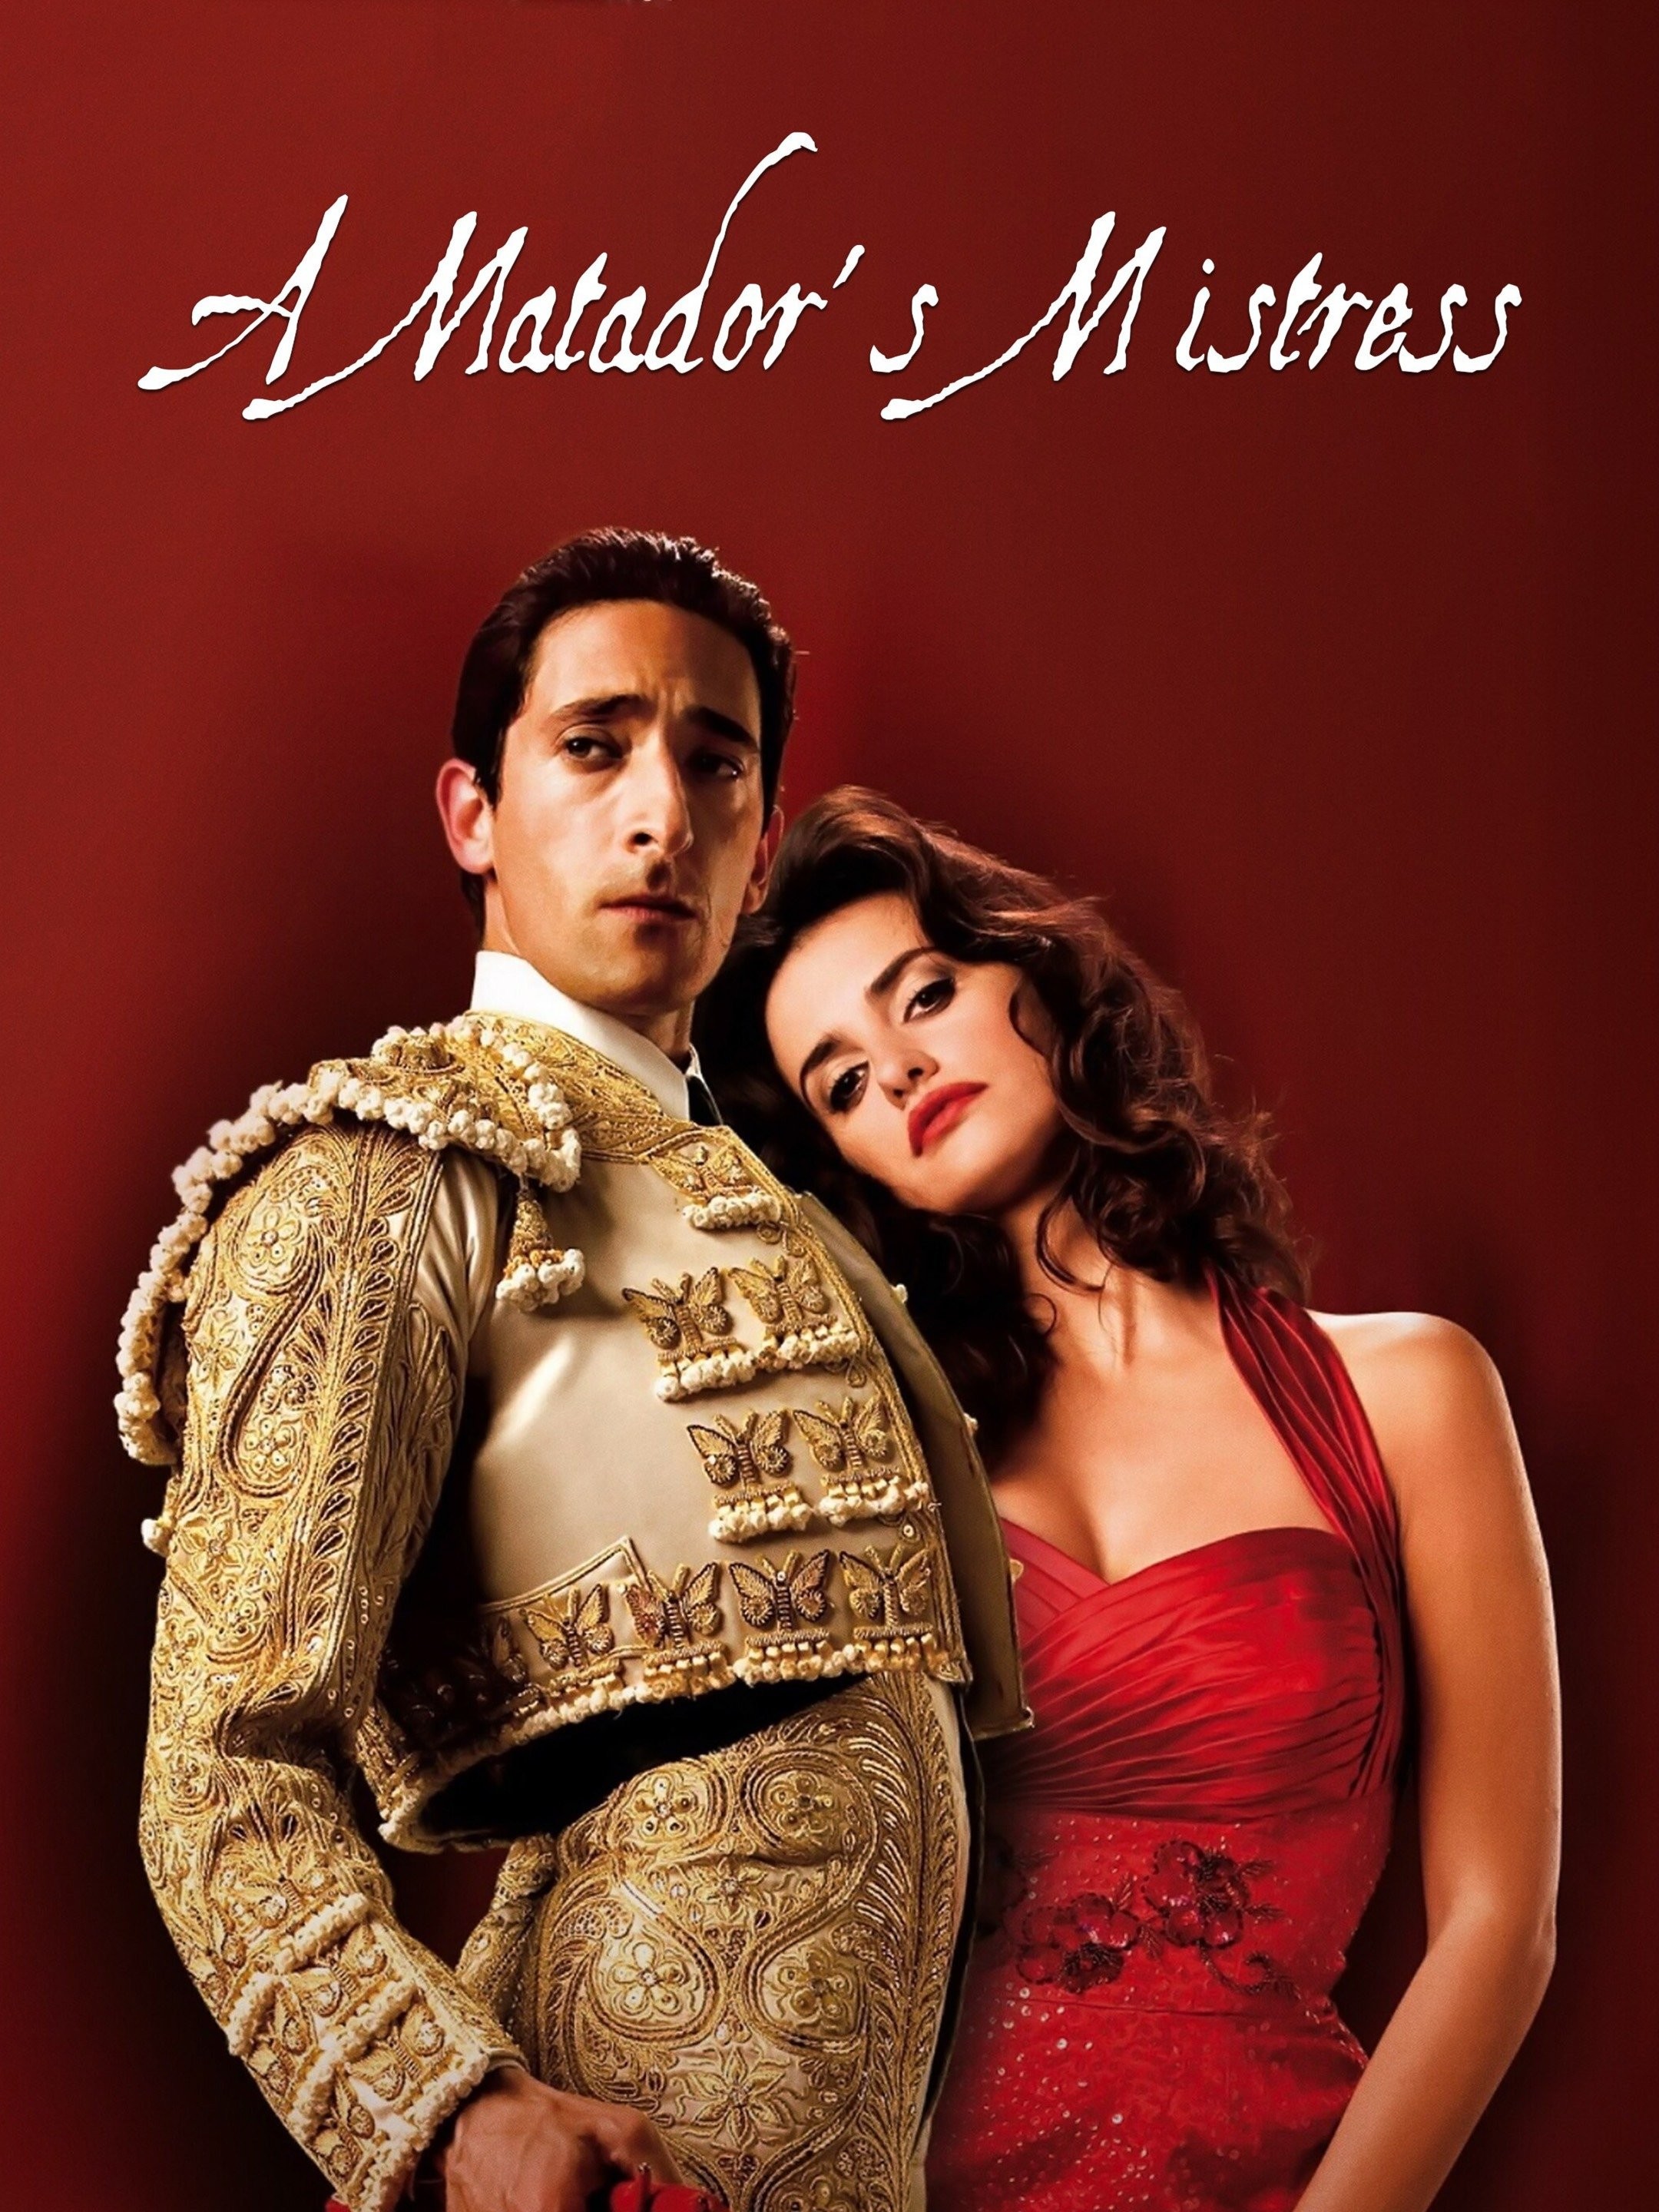 A matador's mistress